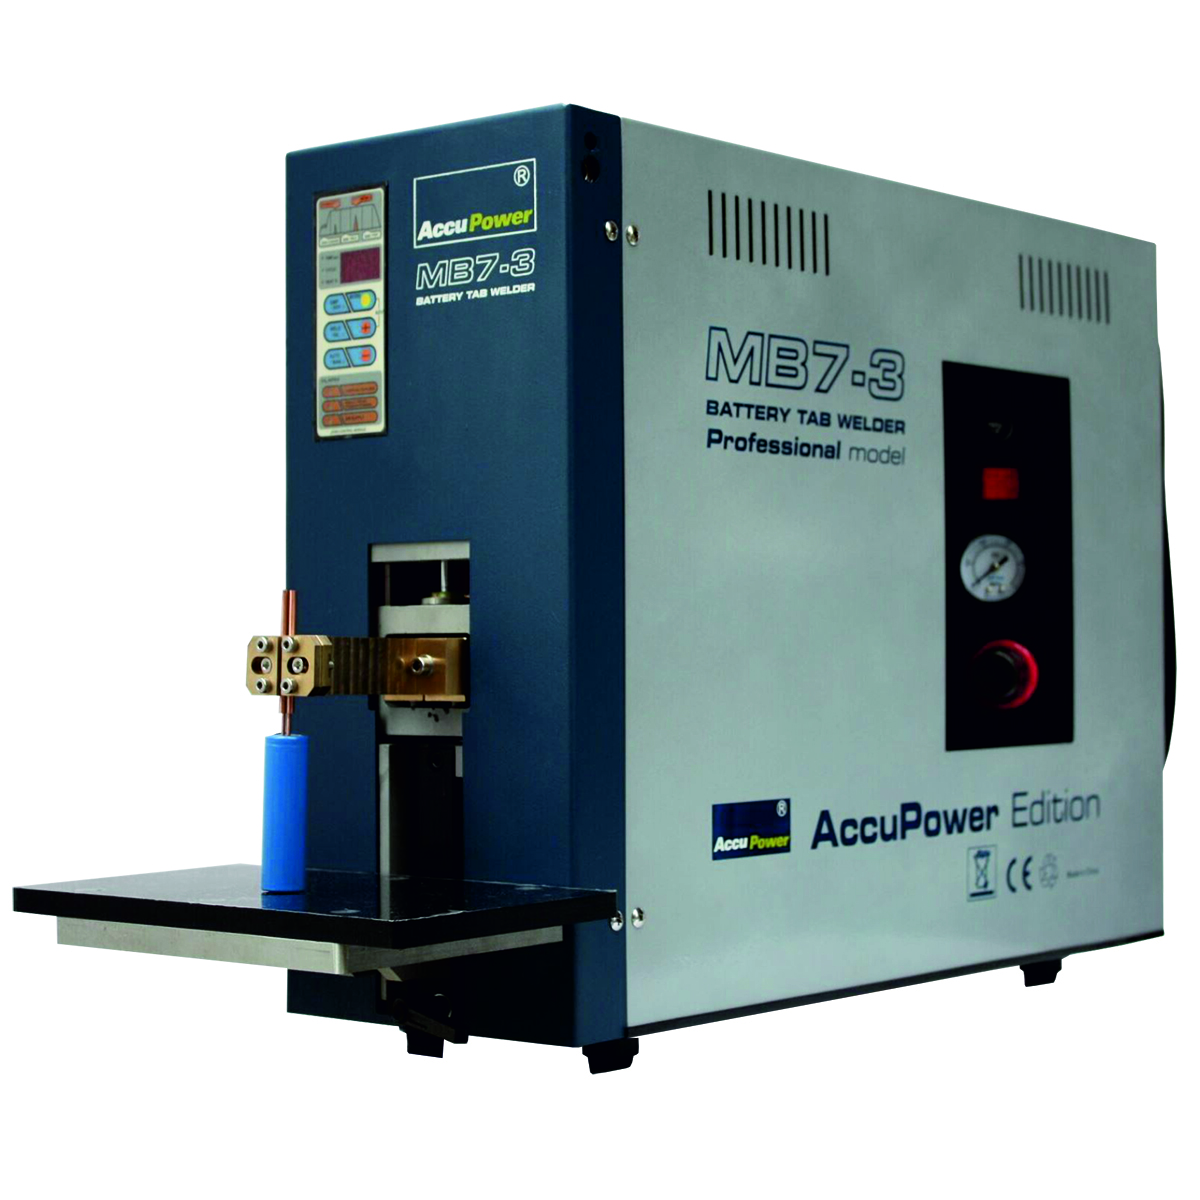 AccuPower Punktschweißmaschine für Akku NiMH, NiCd, Li-ion etc.